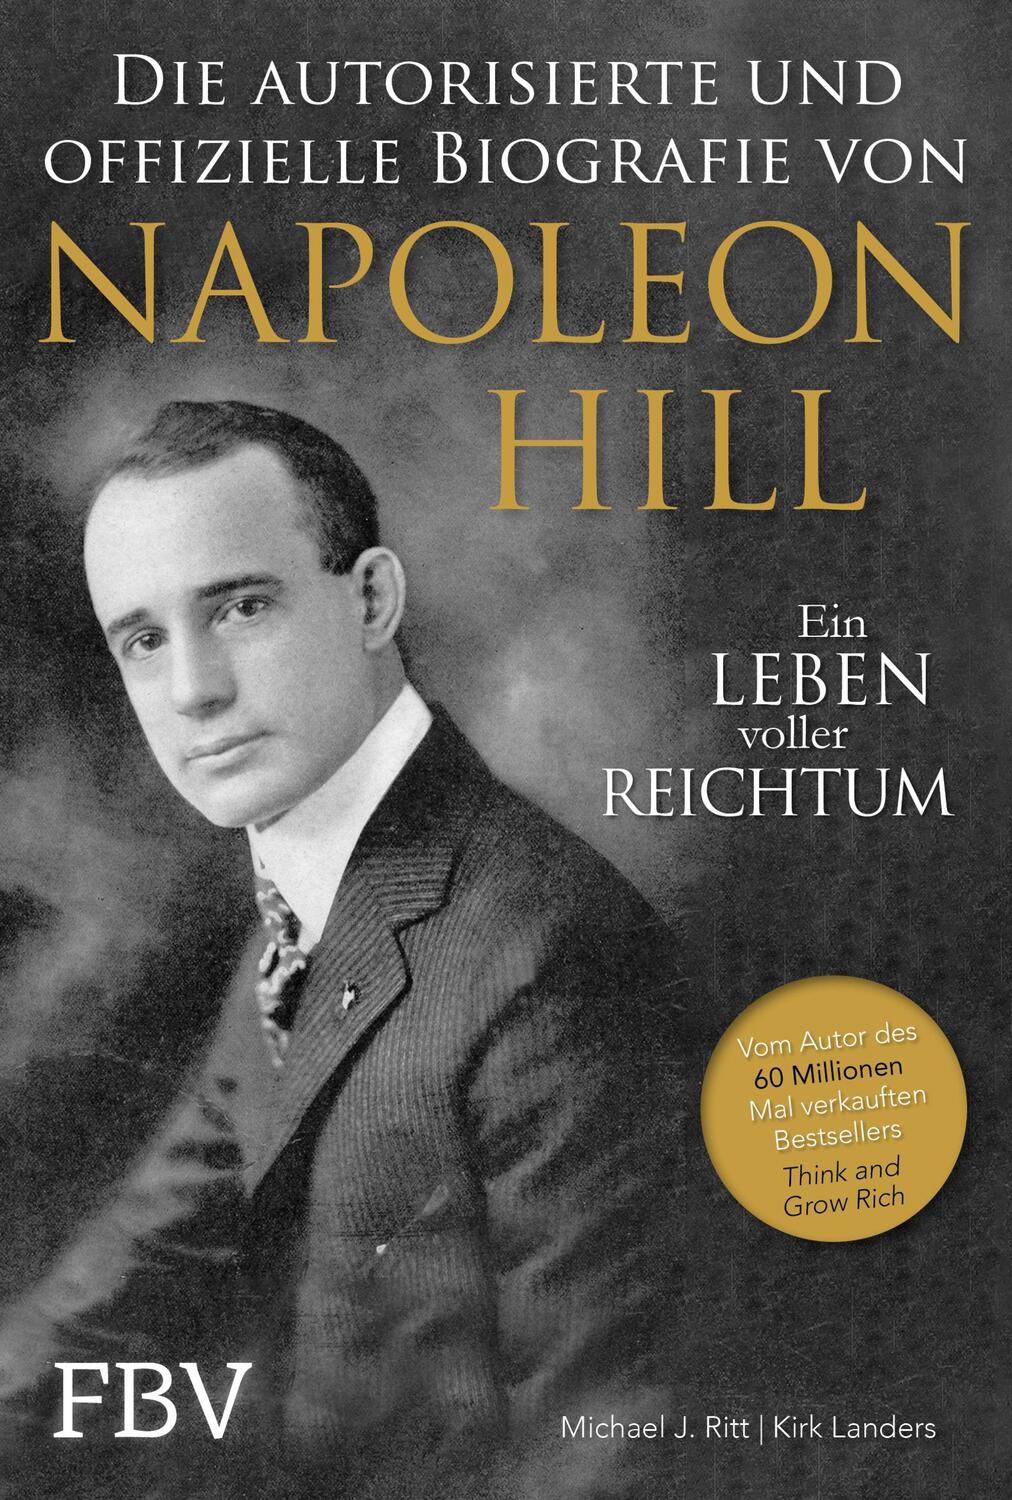 Napoleon Hill - Die offizielle und authorisierte Biografie - Ritt, Michael J.